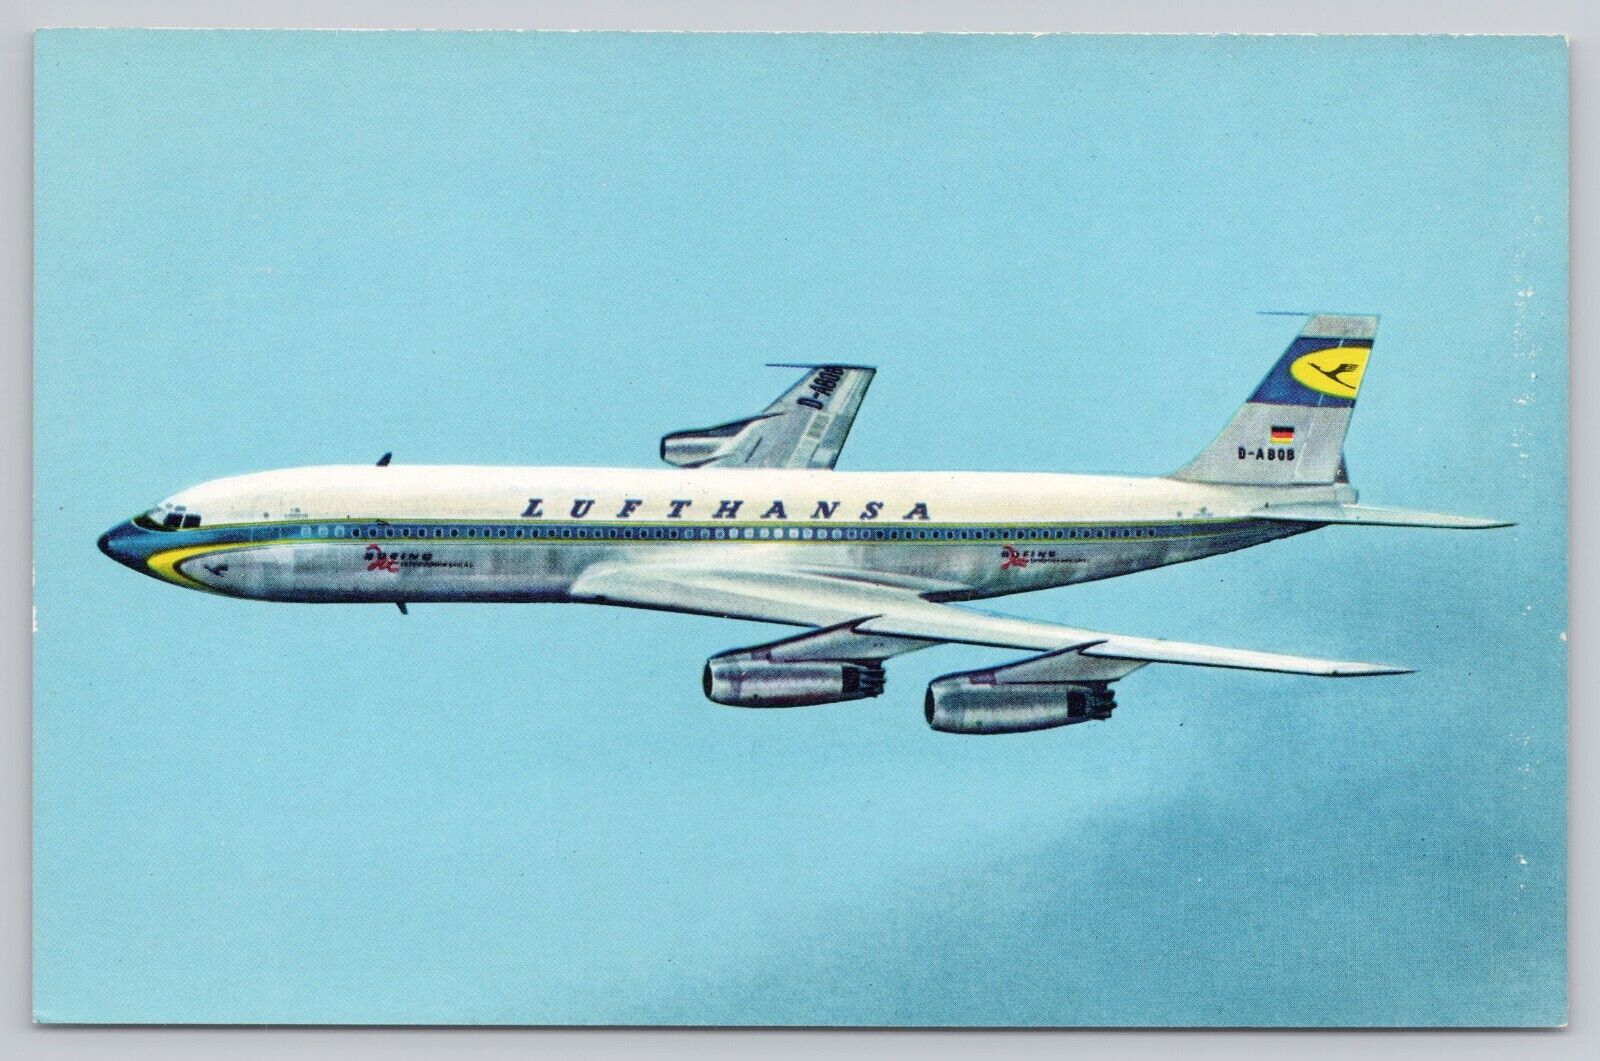 Lufthansa Airplane D-ABOB, Boeing Jet 720, Airline Issued, Vintage Postcard